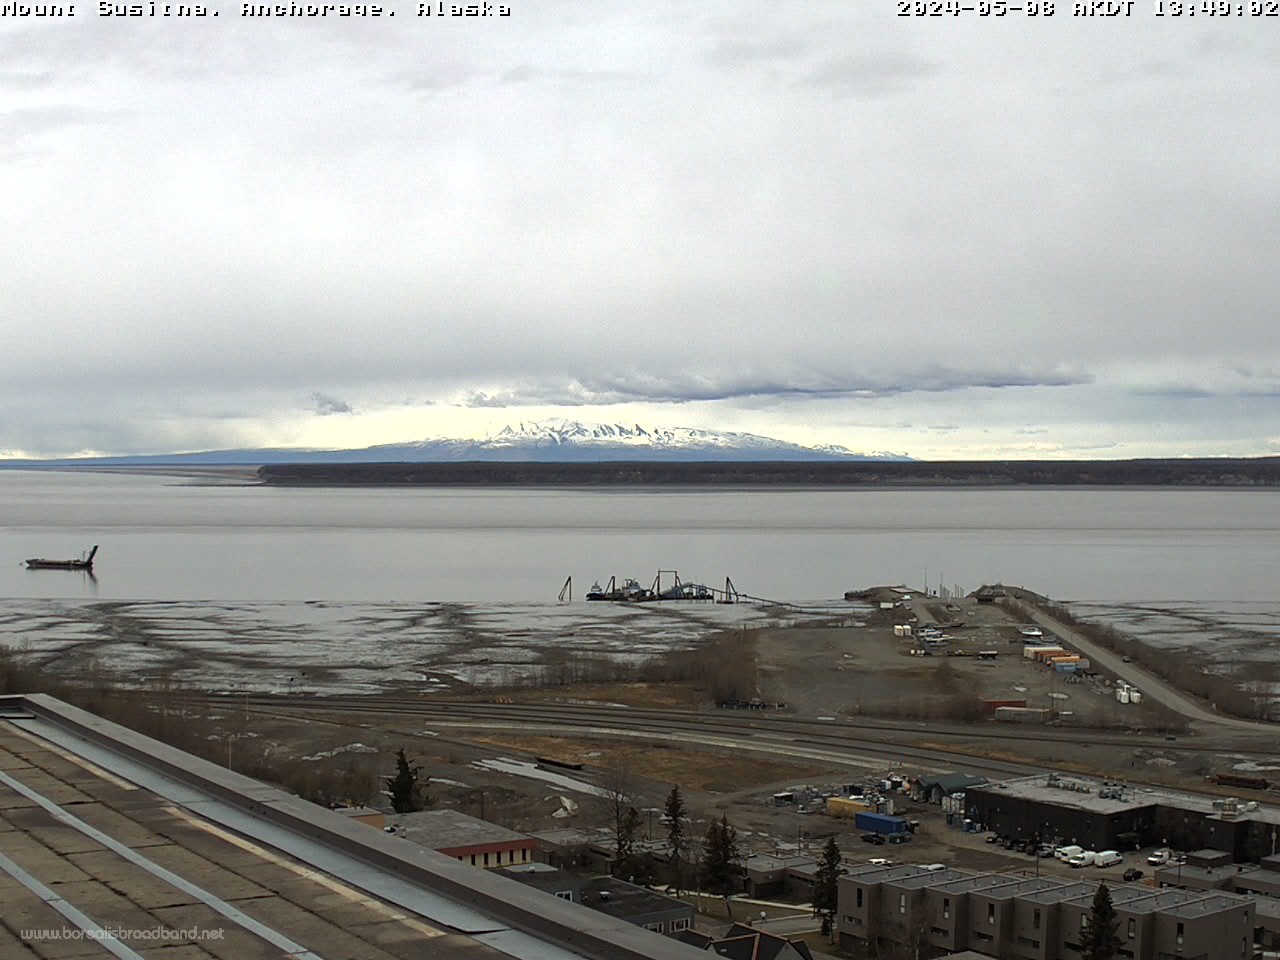 Mount Susitna, Alaska Fr. 13:49